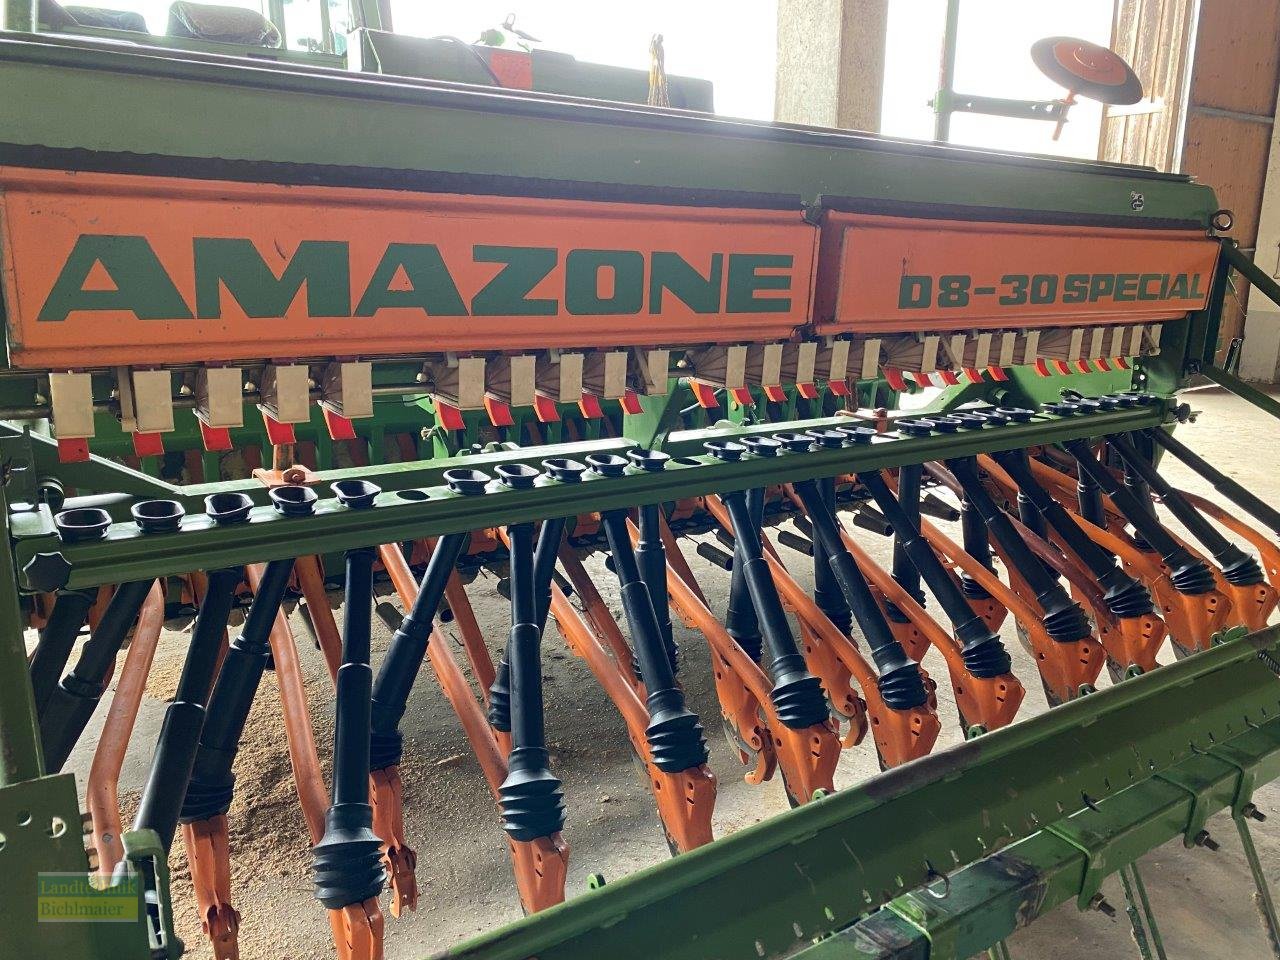 Drillmaschine des Typs Amazone D8-30 Special, Gebrauchtmaschine in Ehekirchen (Bild 1)